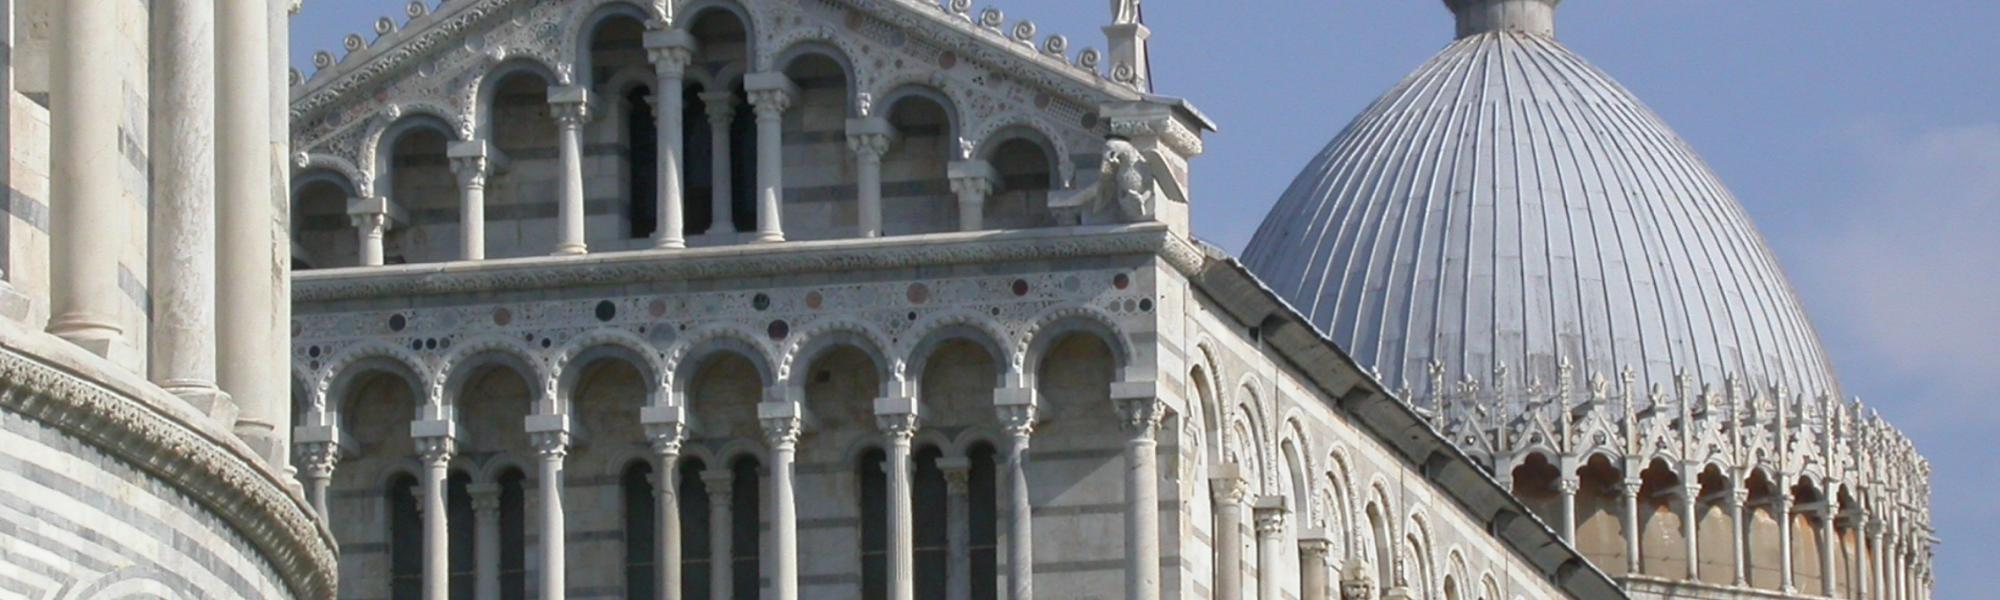 Piazza Del Duomo Comune Di Pisa Turismo